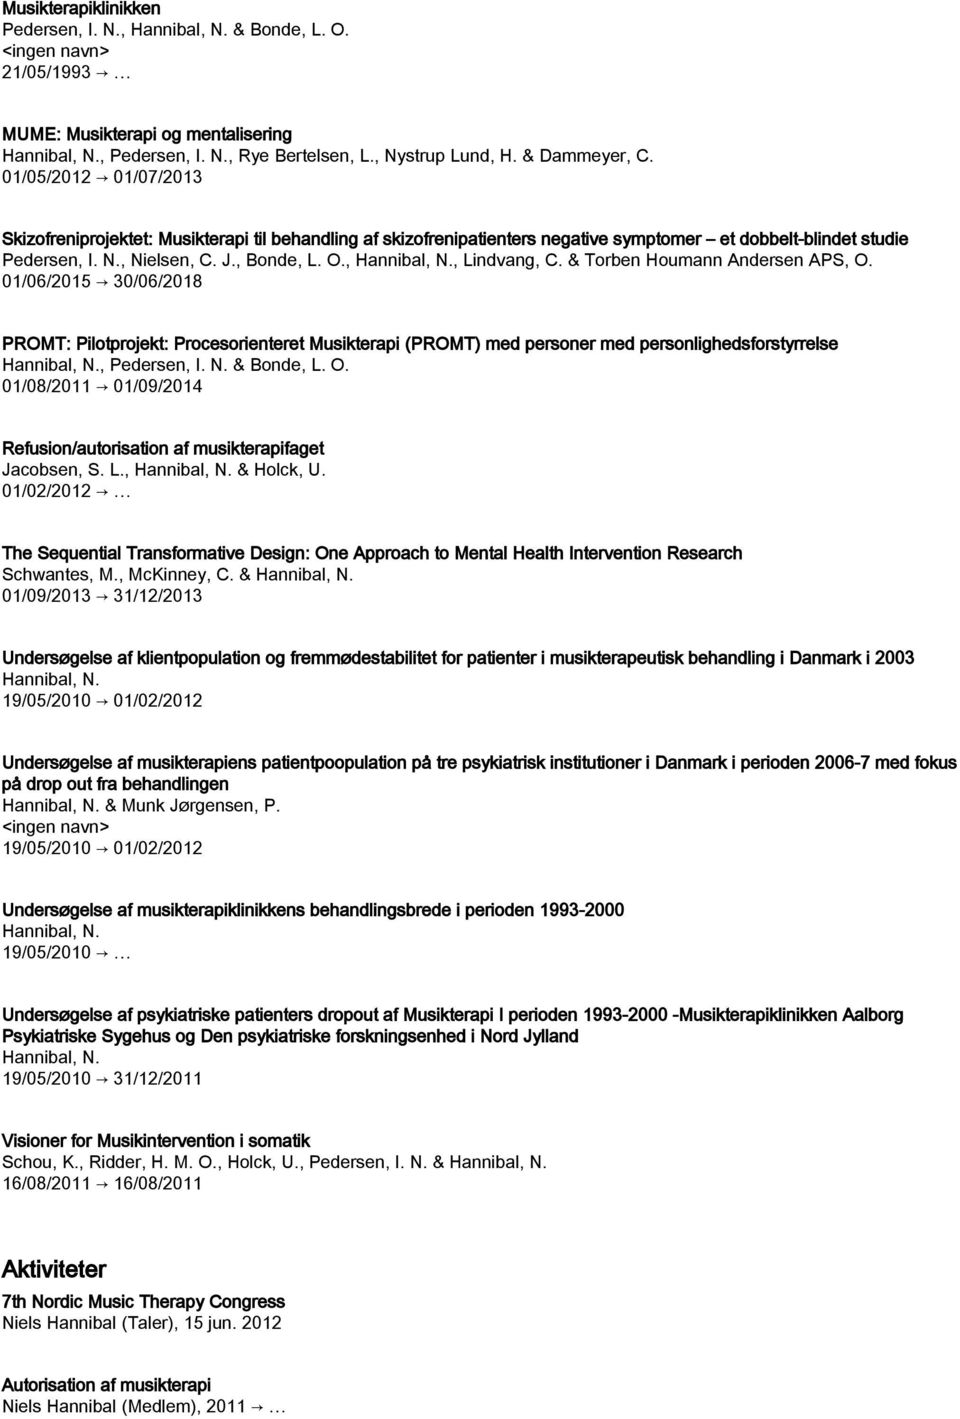 & Torben Houmann Andersen APS, O. 01/06/2015 30/06/2018 PROMT: Pilotprojekt: Procesorienteret Musikterapi (PROMT) med personer med personlighedsforstyrrelse, Pedersen, I. N. & Bonde, L. O. 01/08/2011 01/09/2014 Refusion/autorisation af musikterapifaget Jacobsen, S.